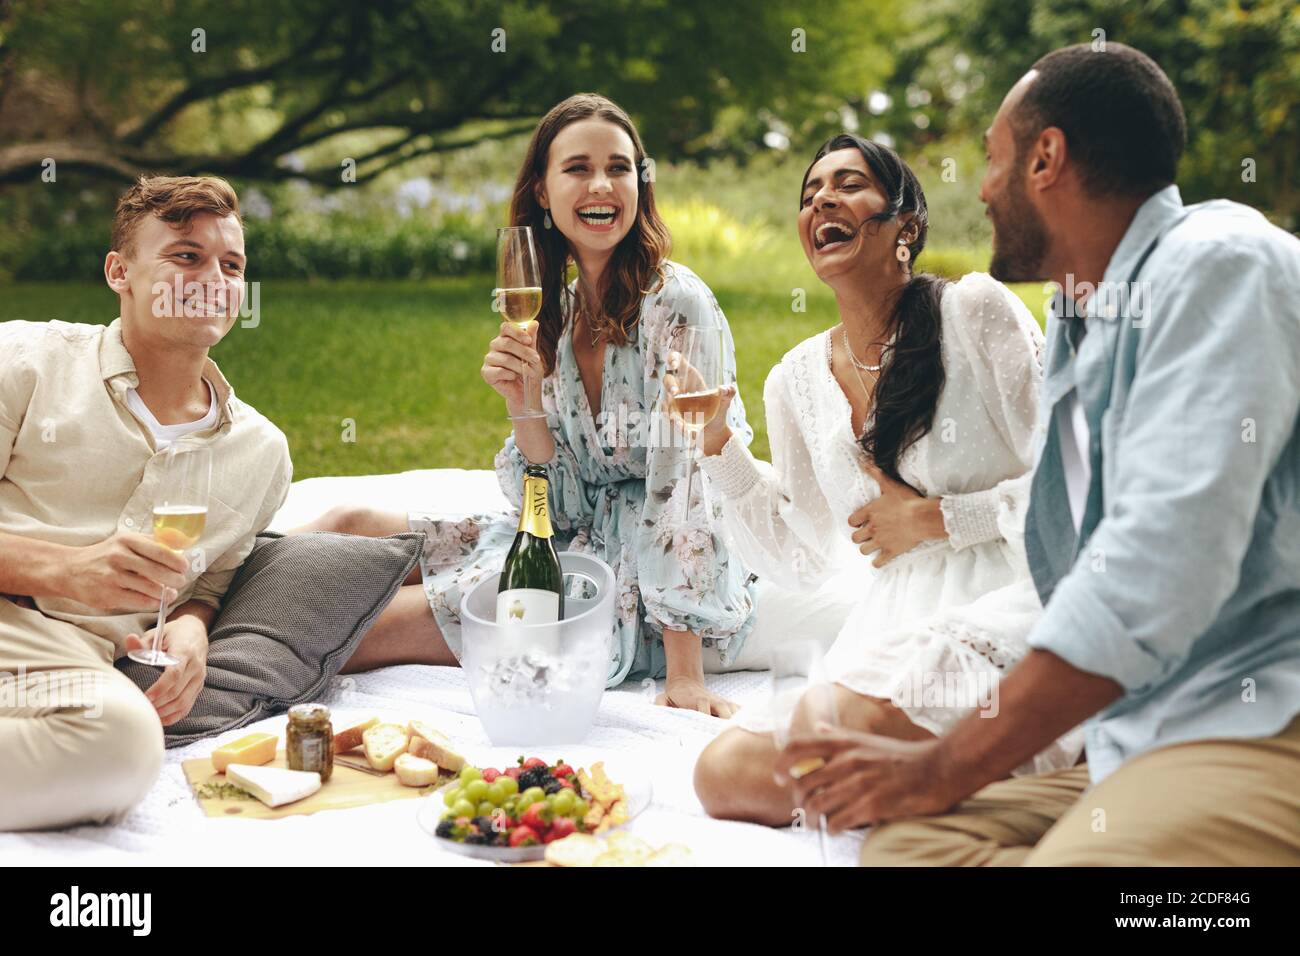 Groupe d'amis qui ont un bon moment sur le pique-nique au parc. Des jeunes heureux assis dans le parc parlent et sourient avec des verres à champagne à la main. Banque D'Images